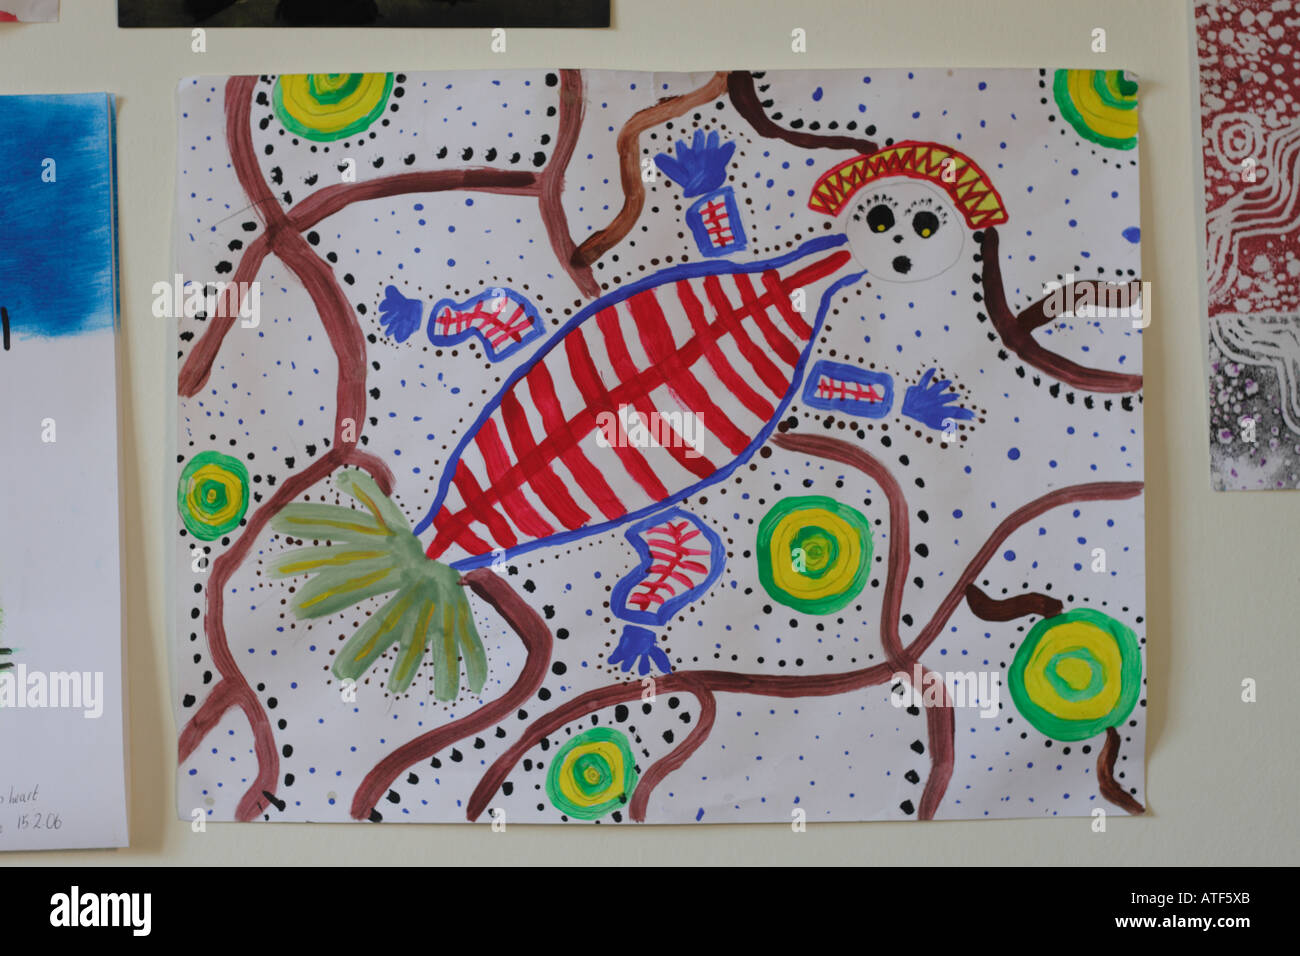 Peinture D Enfant Dans Le Style D Art Aborigene Australien Avec Creature Type Lezard Photo Stock Alamy